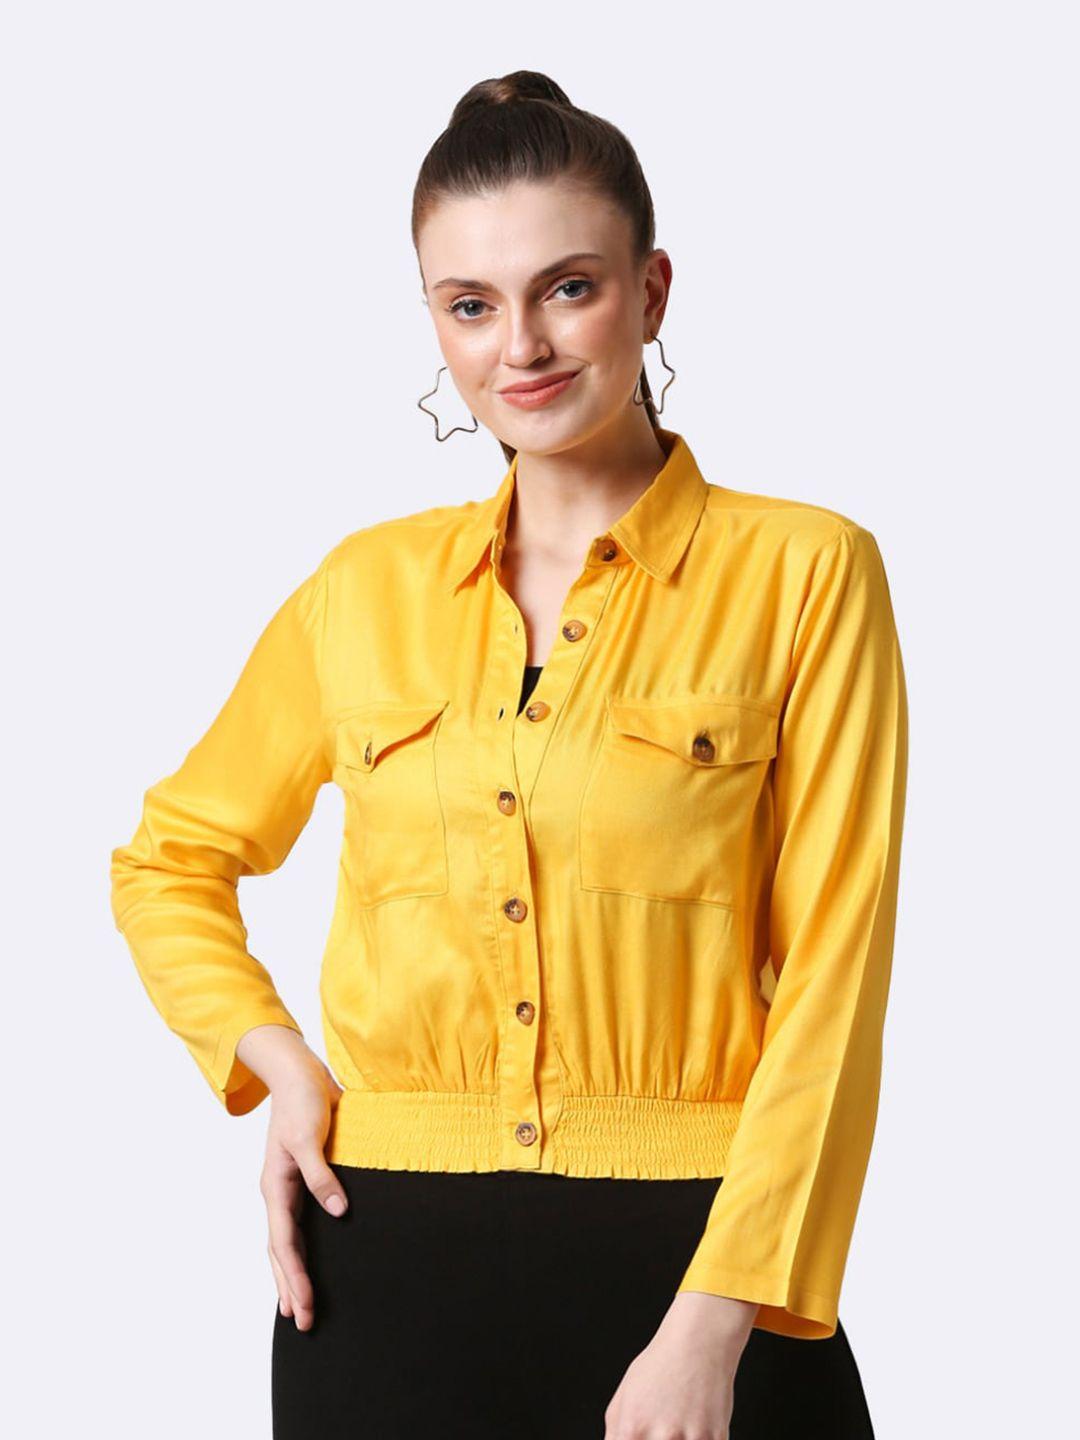 bewakoof yellow mandarin collar shirt style top